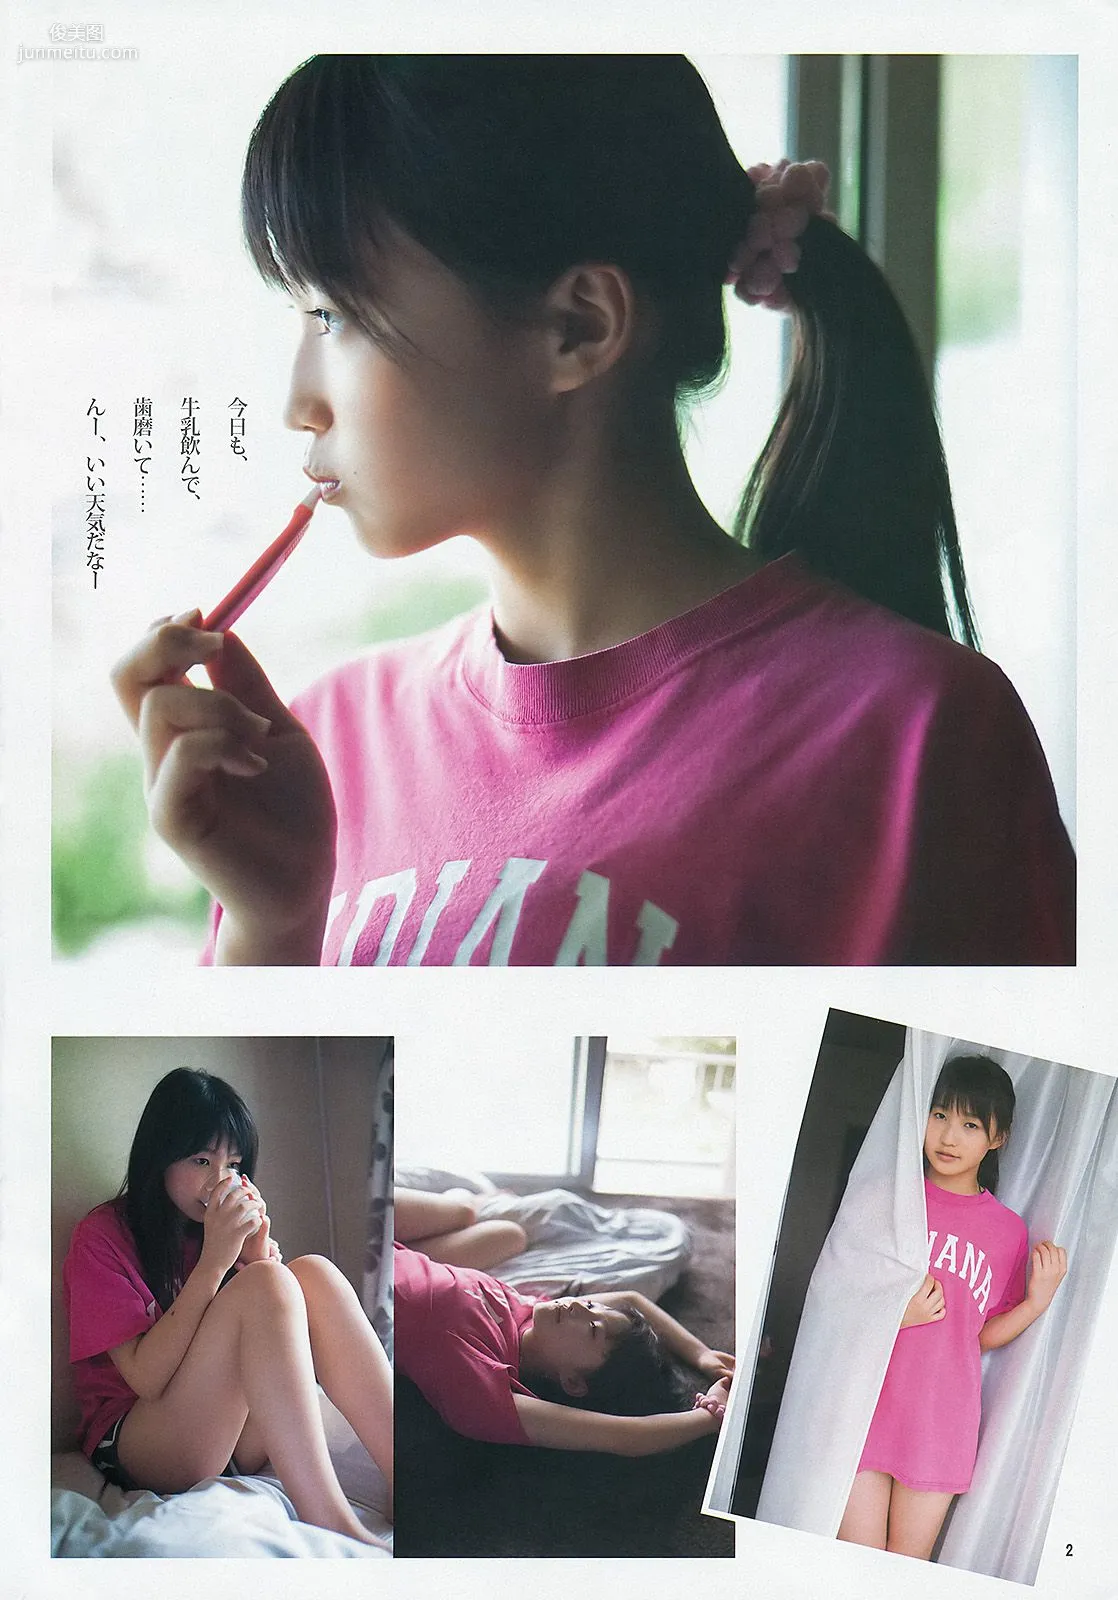 鞘師里保 たわコレ2013夏 [Weekly Young Jump] 2013年No.38 写真杂志3